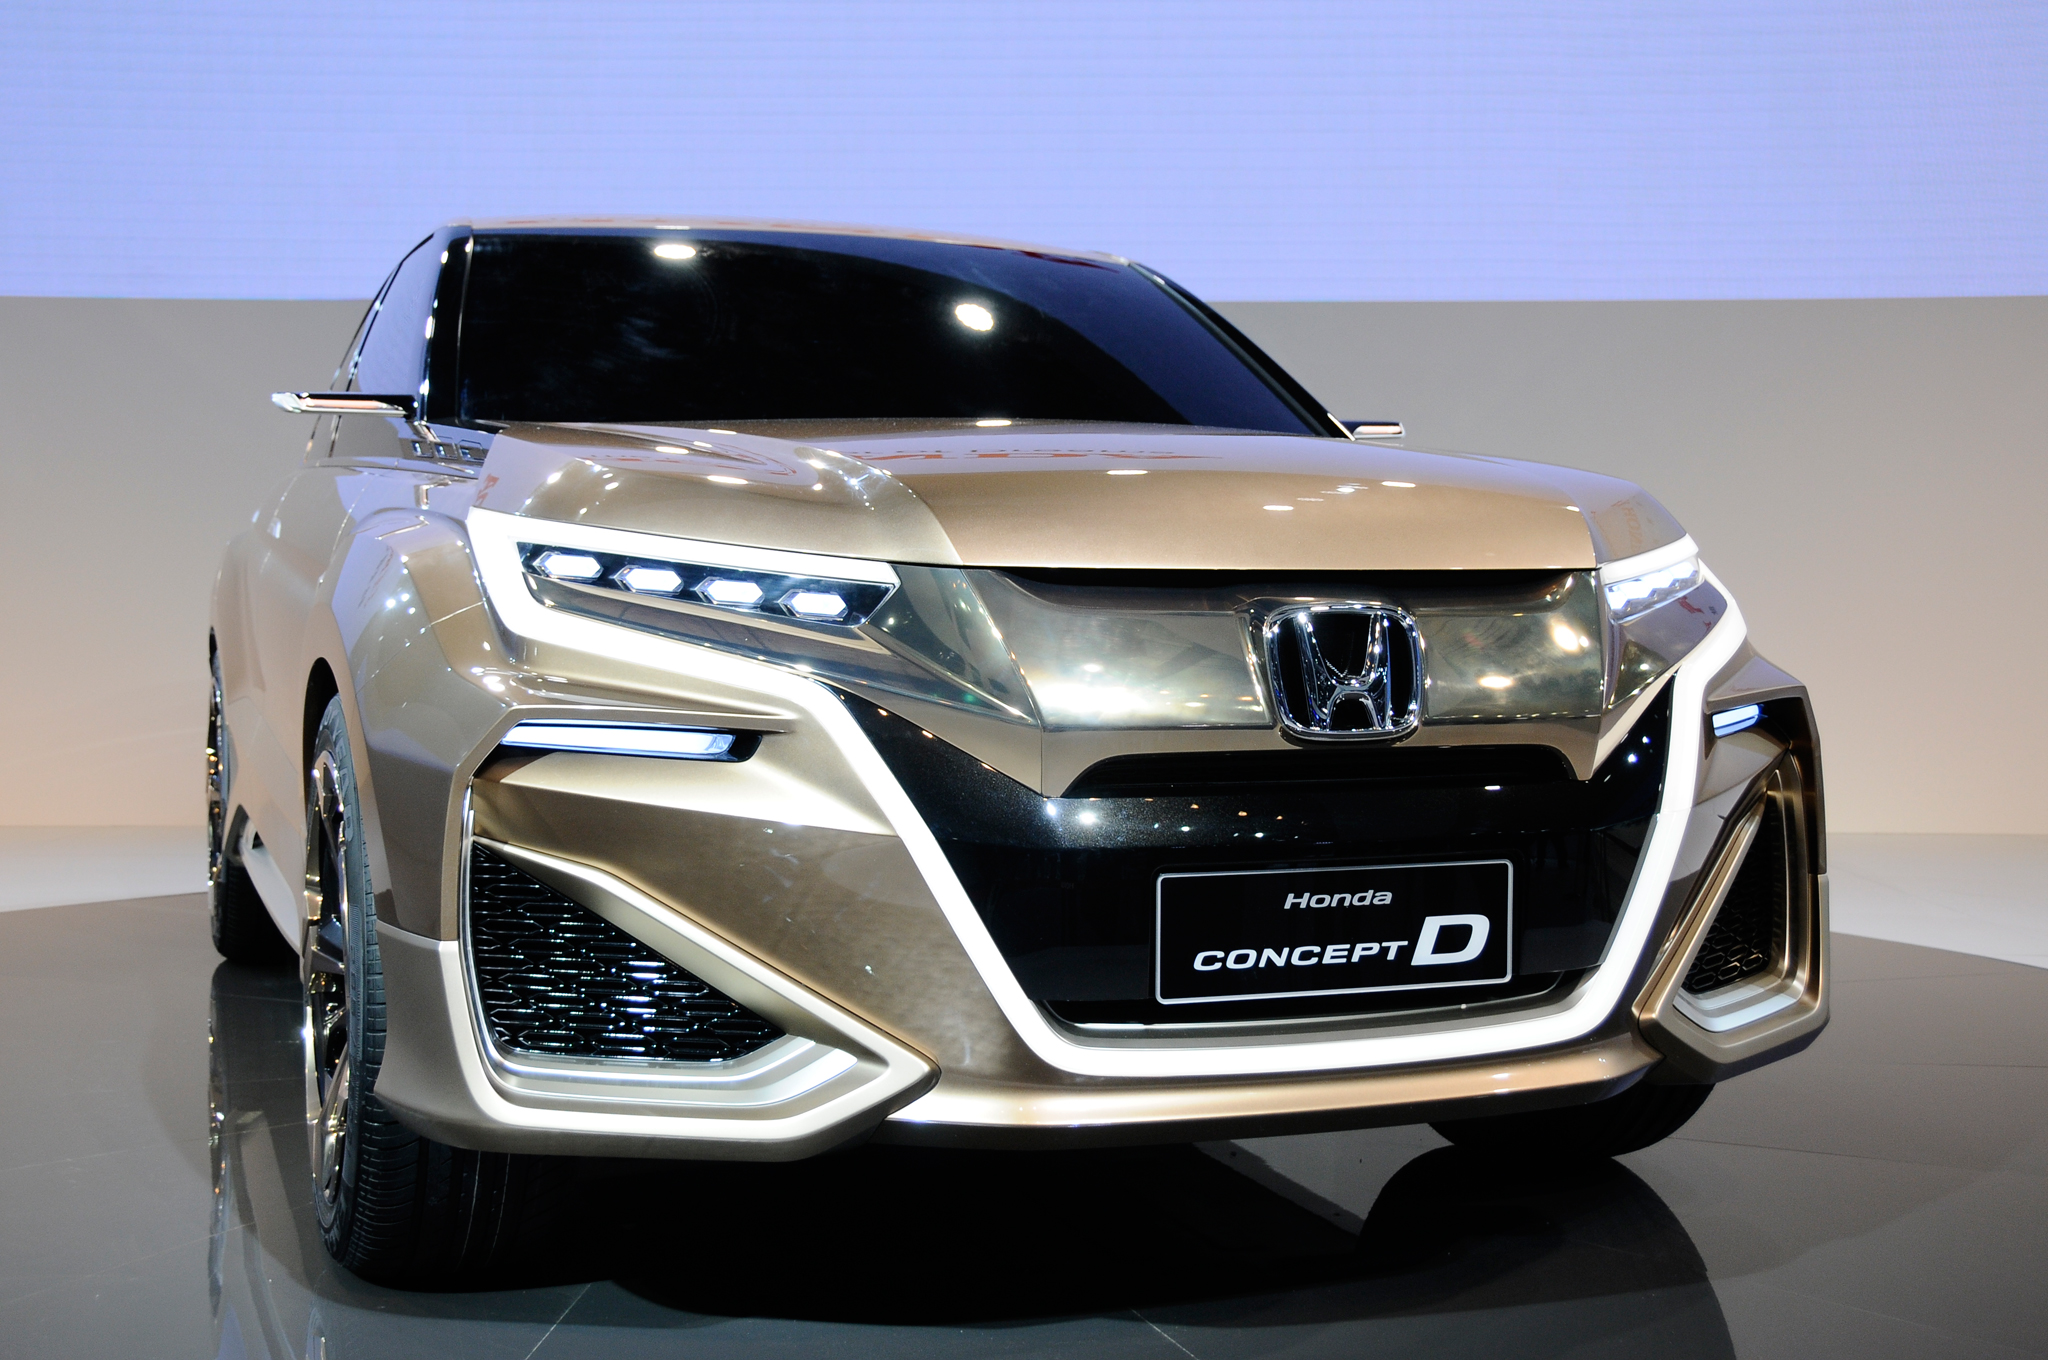 Honda Concept D Backgrounds, Compatible - PC, Mobile, Gadgets| 2048x1360 px